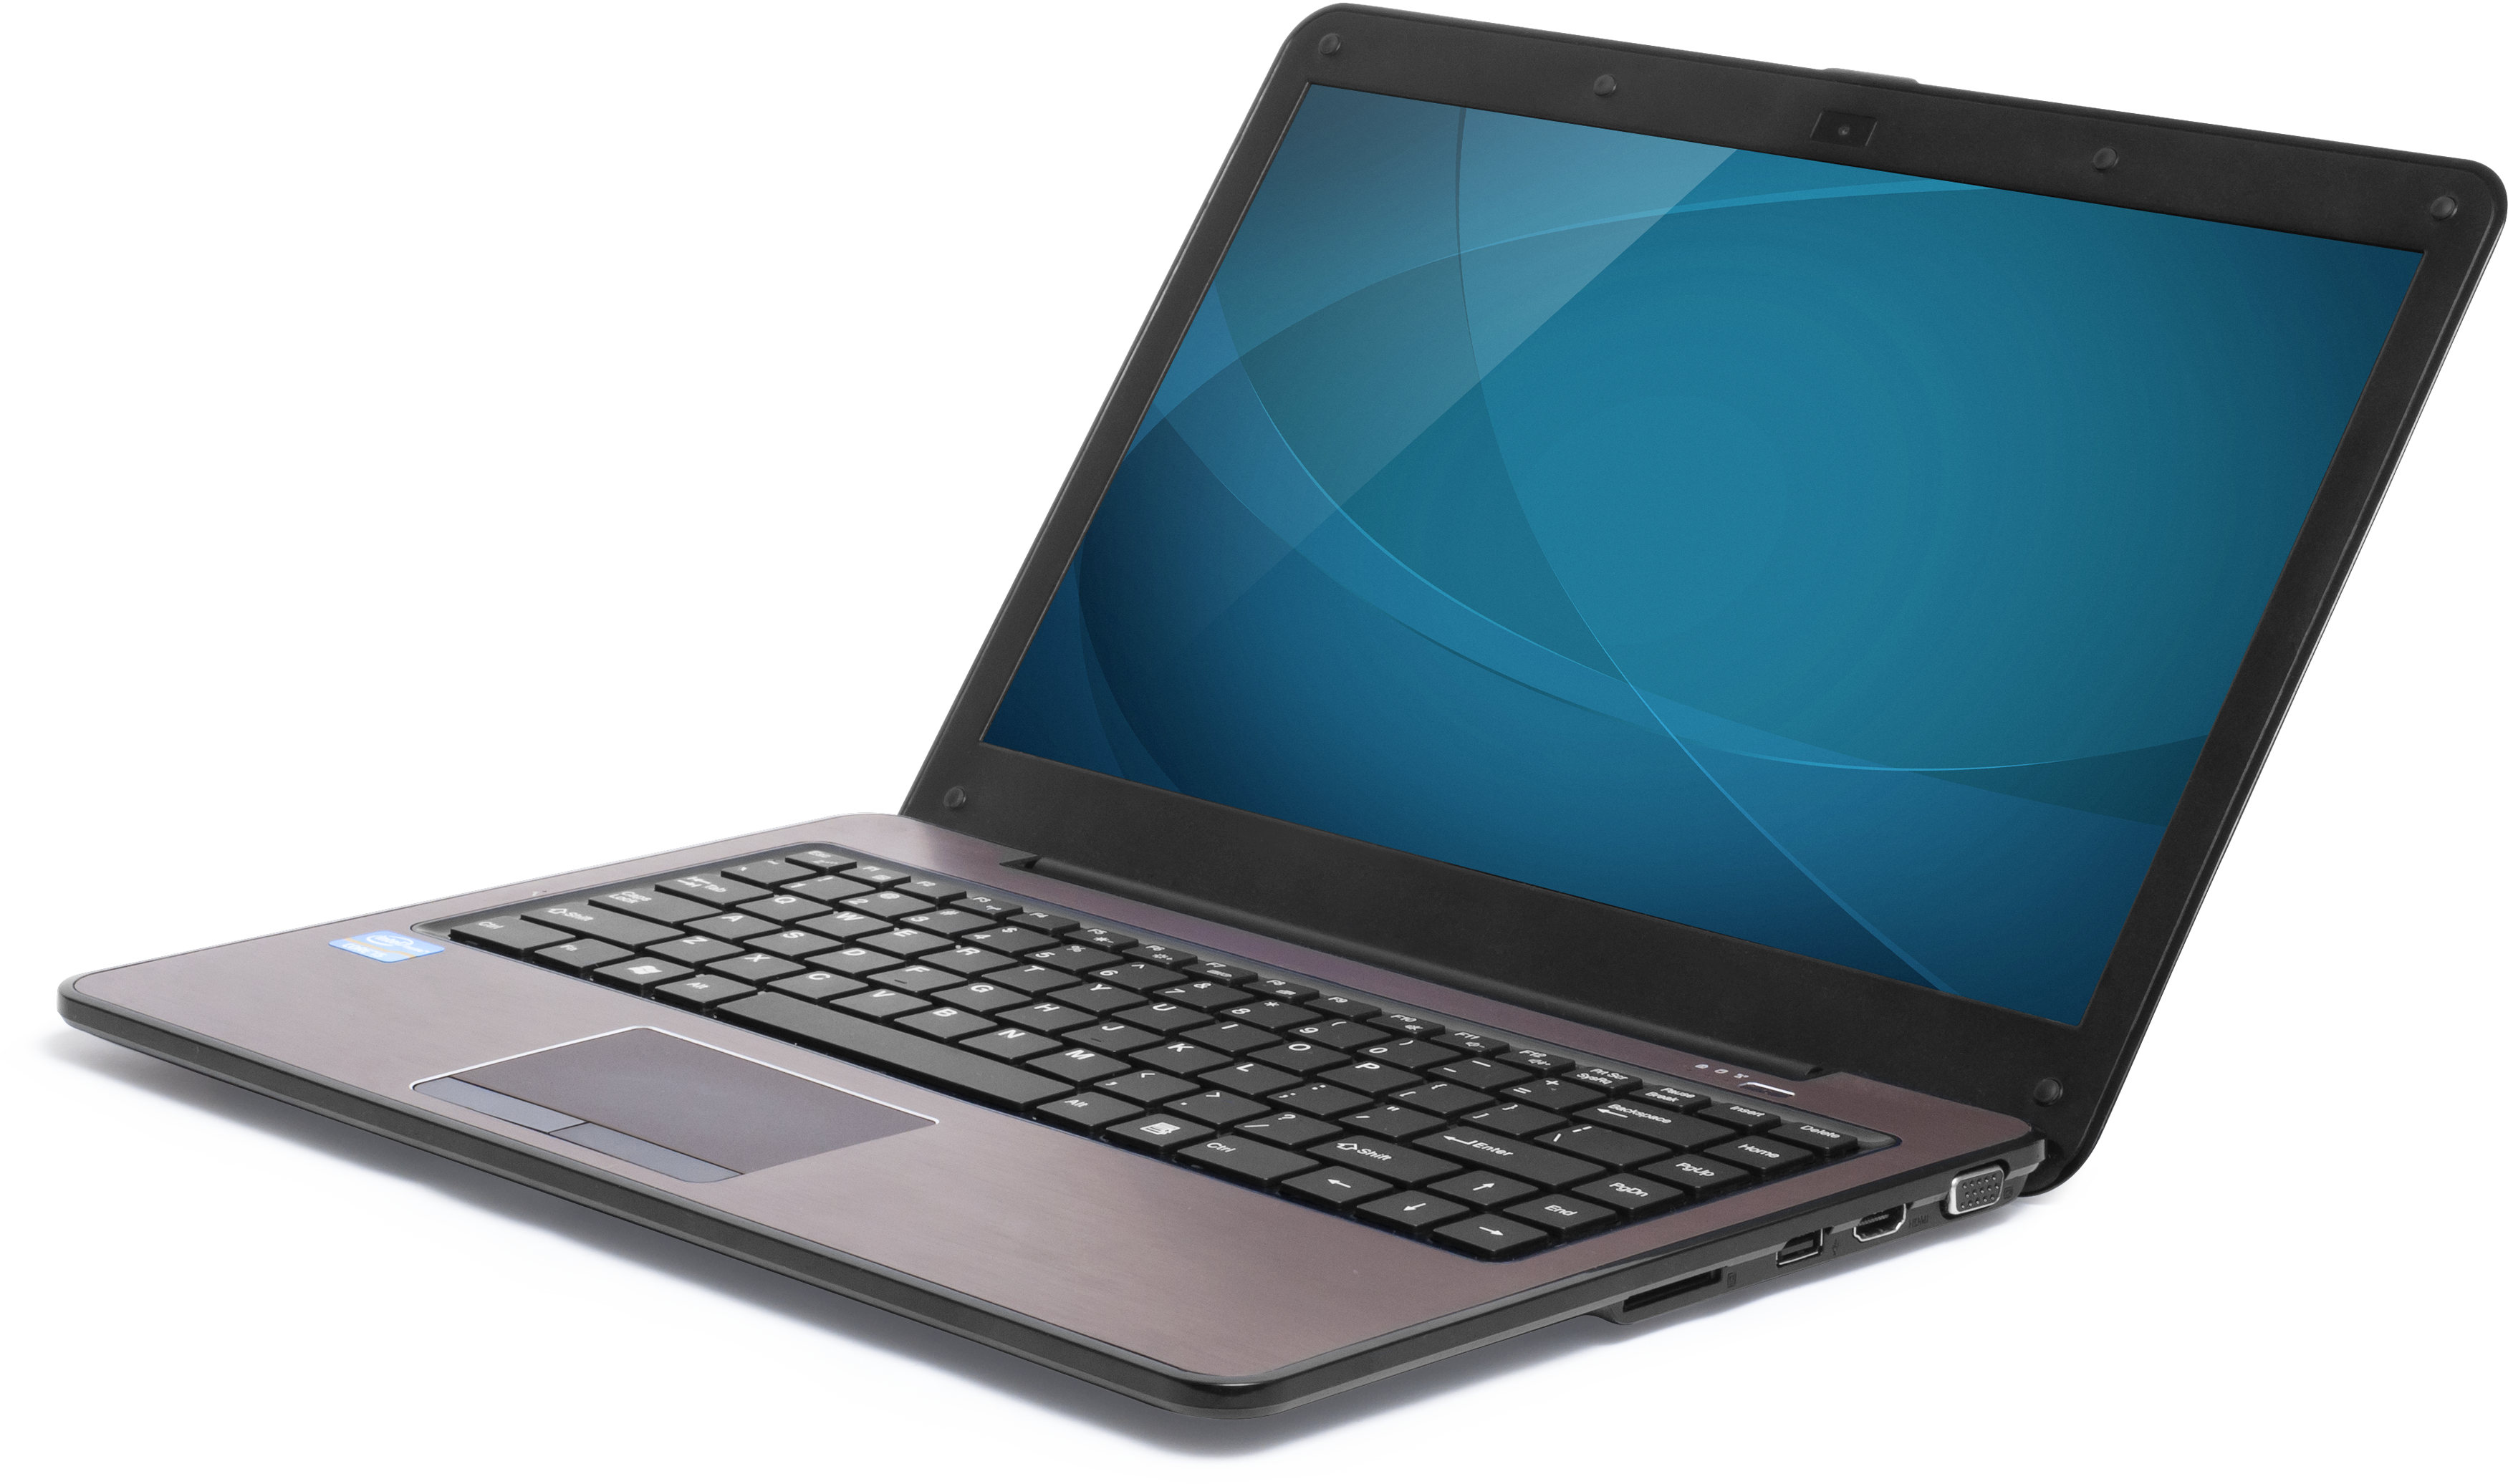 Free PNG Laptop - 44483